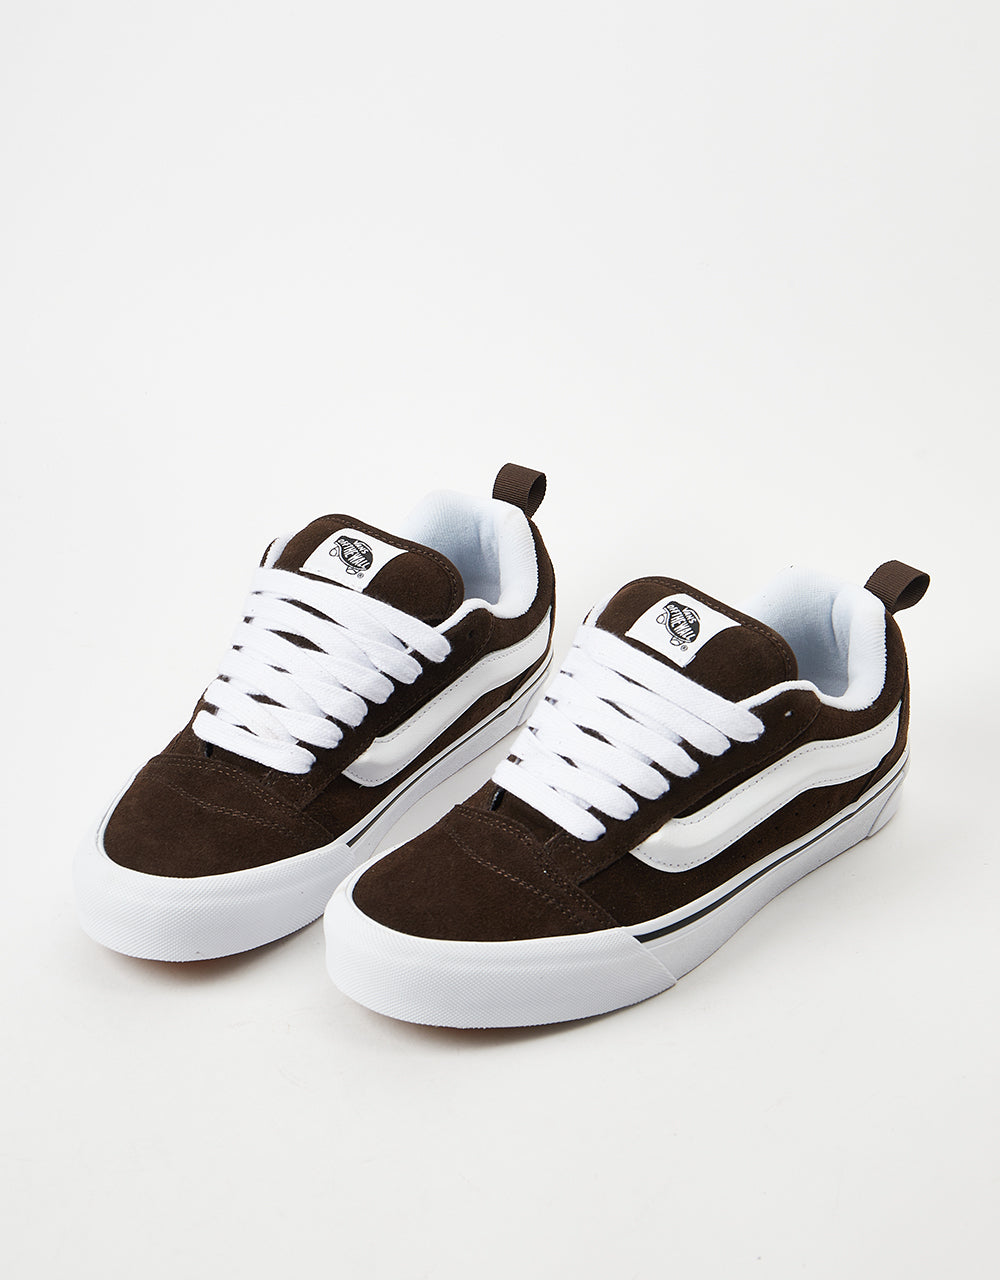 Vans Knu Skool Skate Shoes - Brown/White